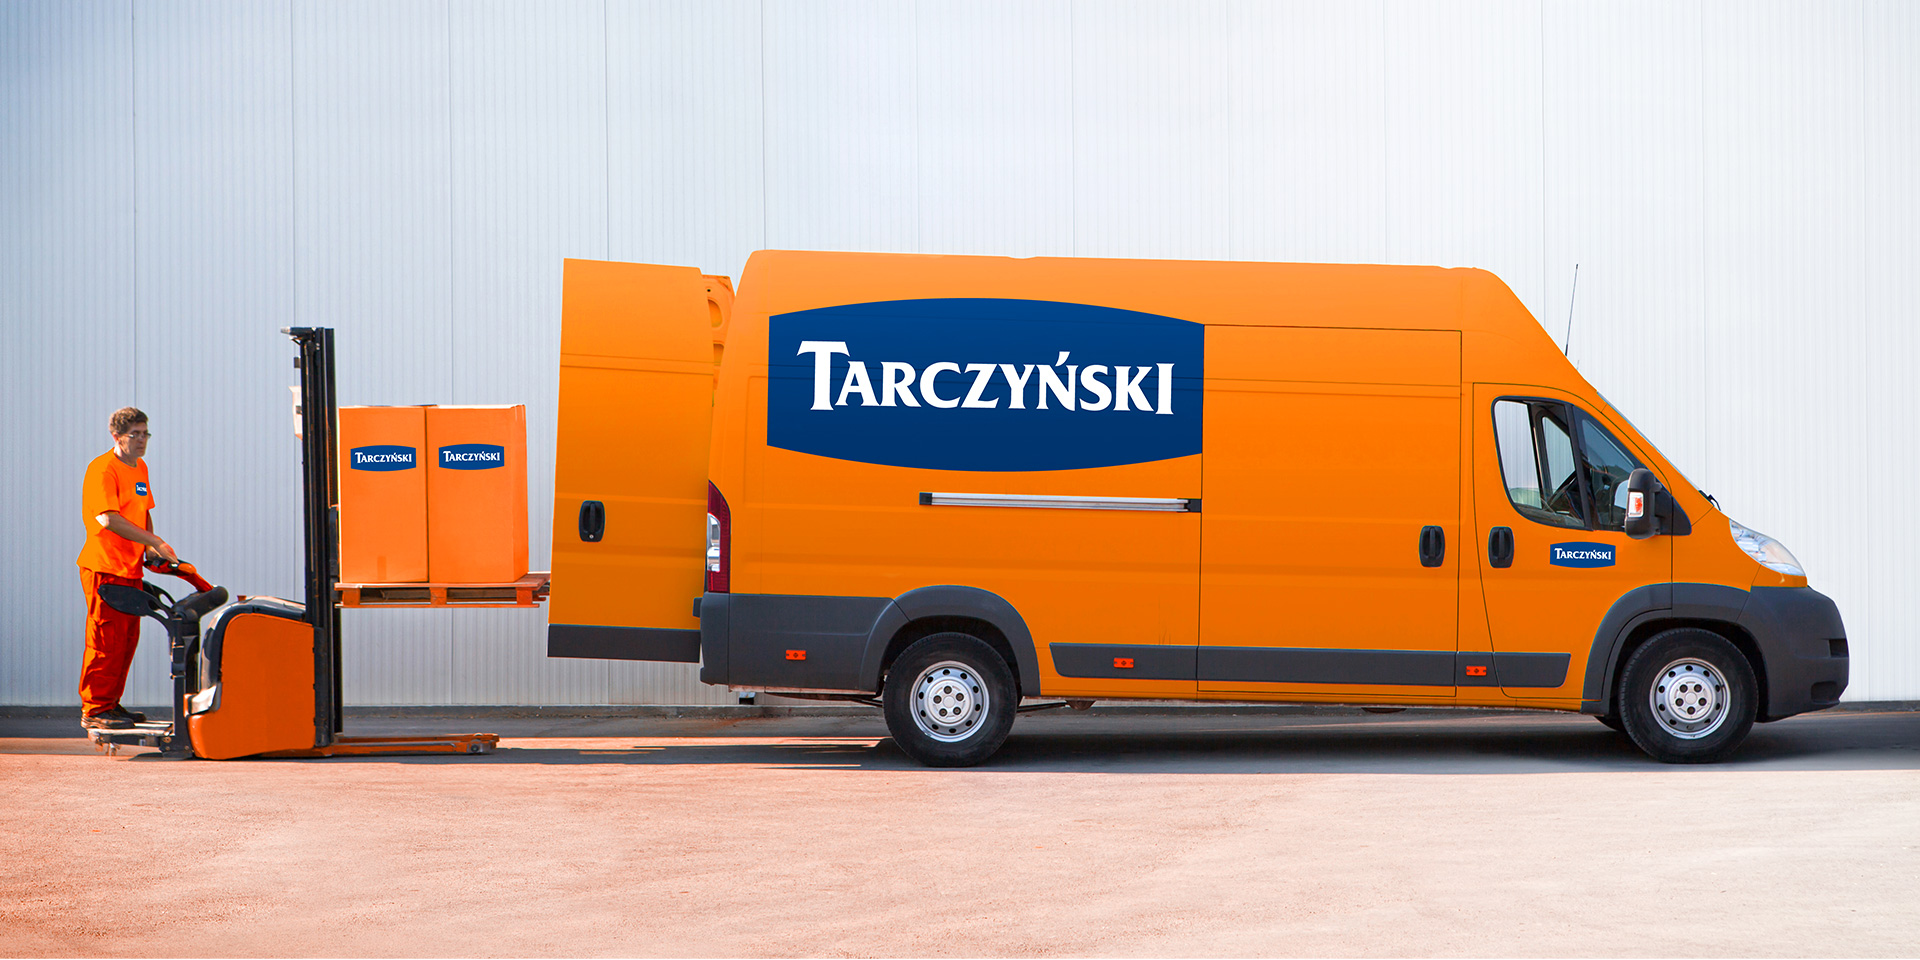 Corporate identity marki Tarczyński z PND Futura